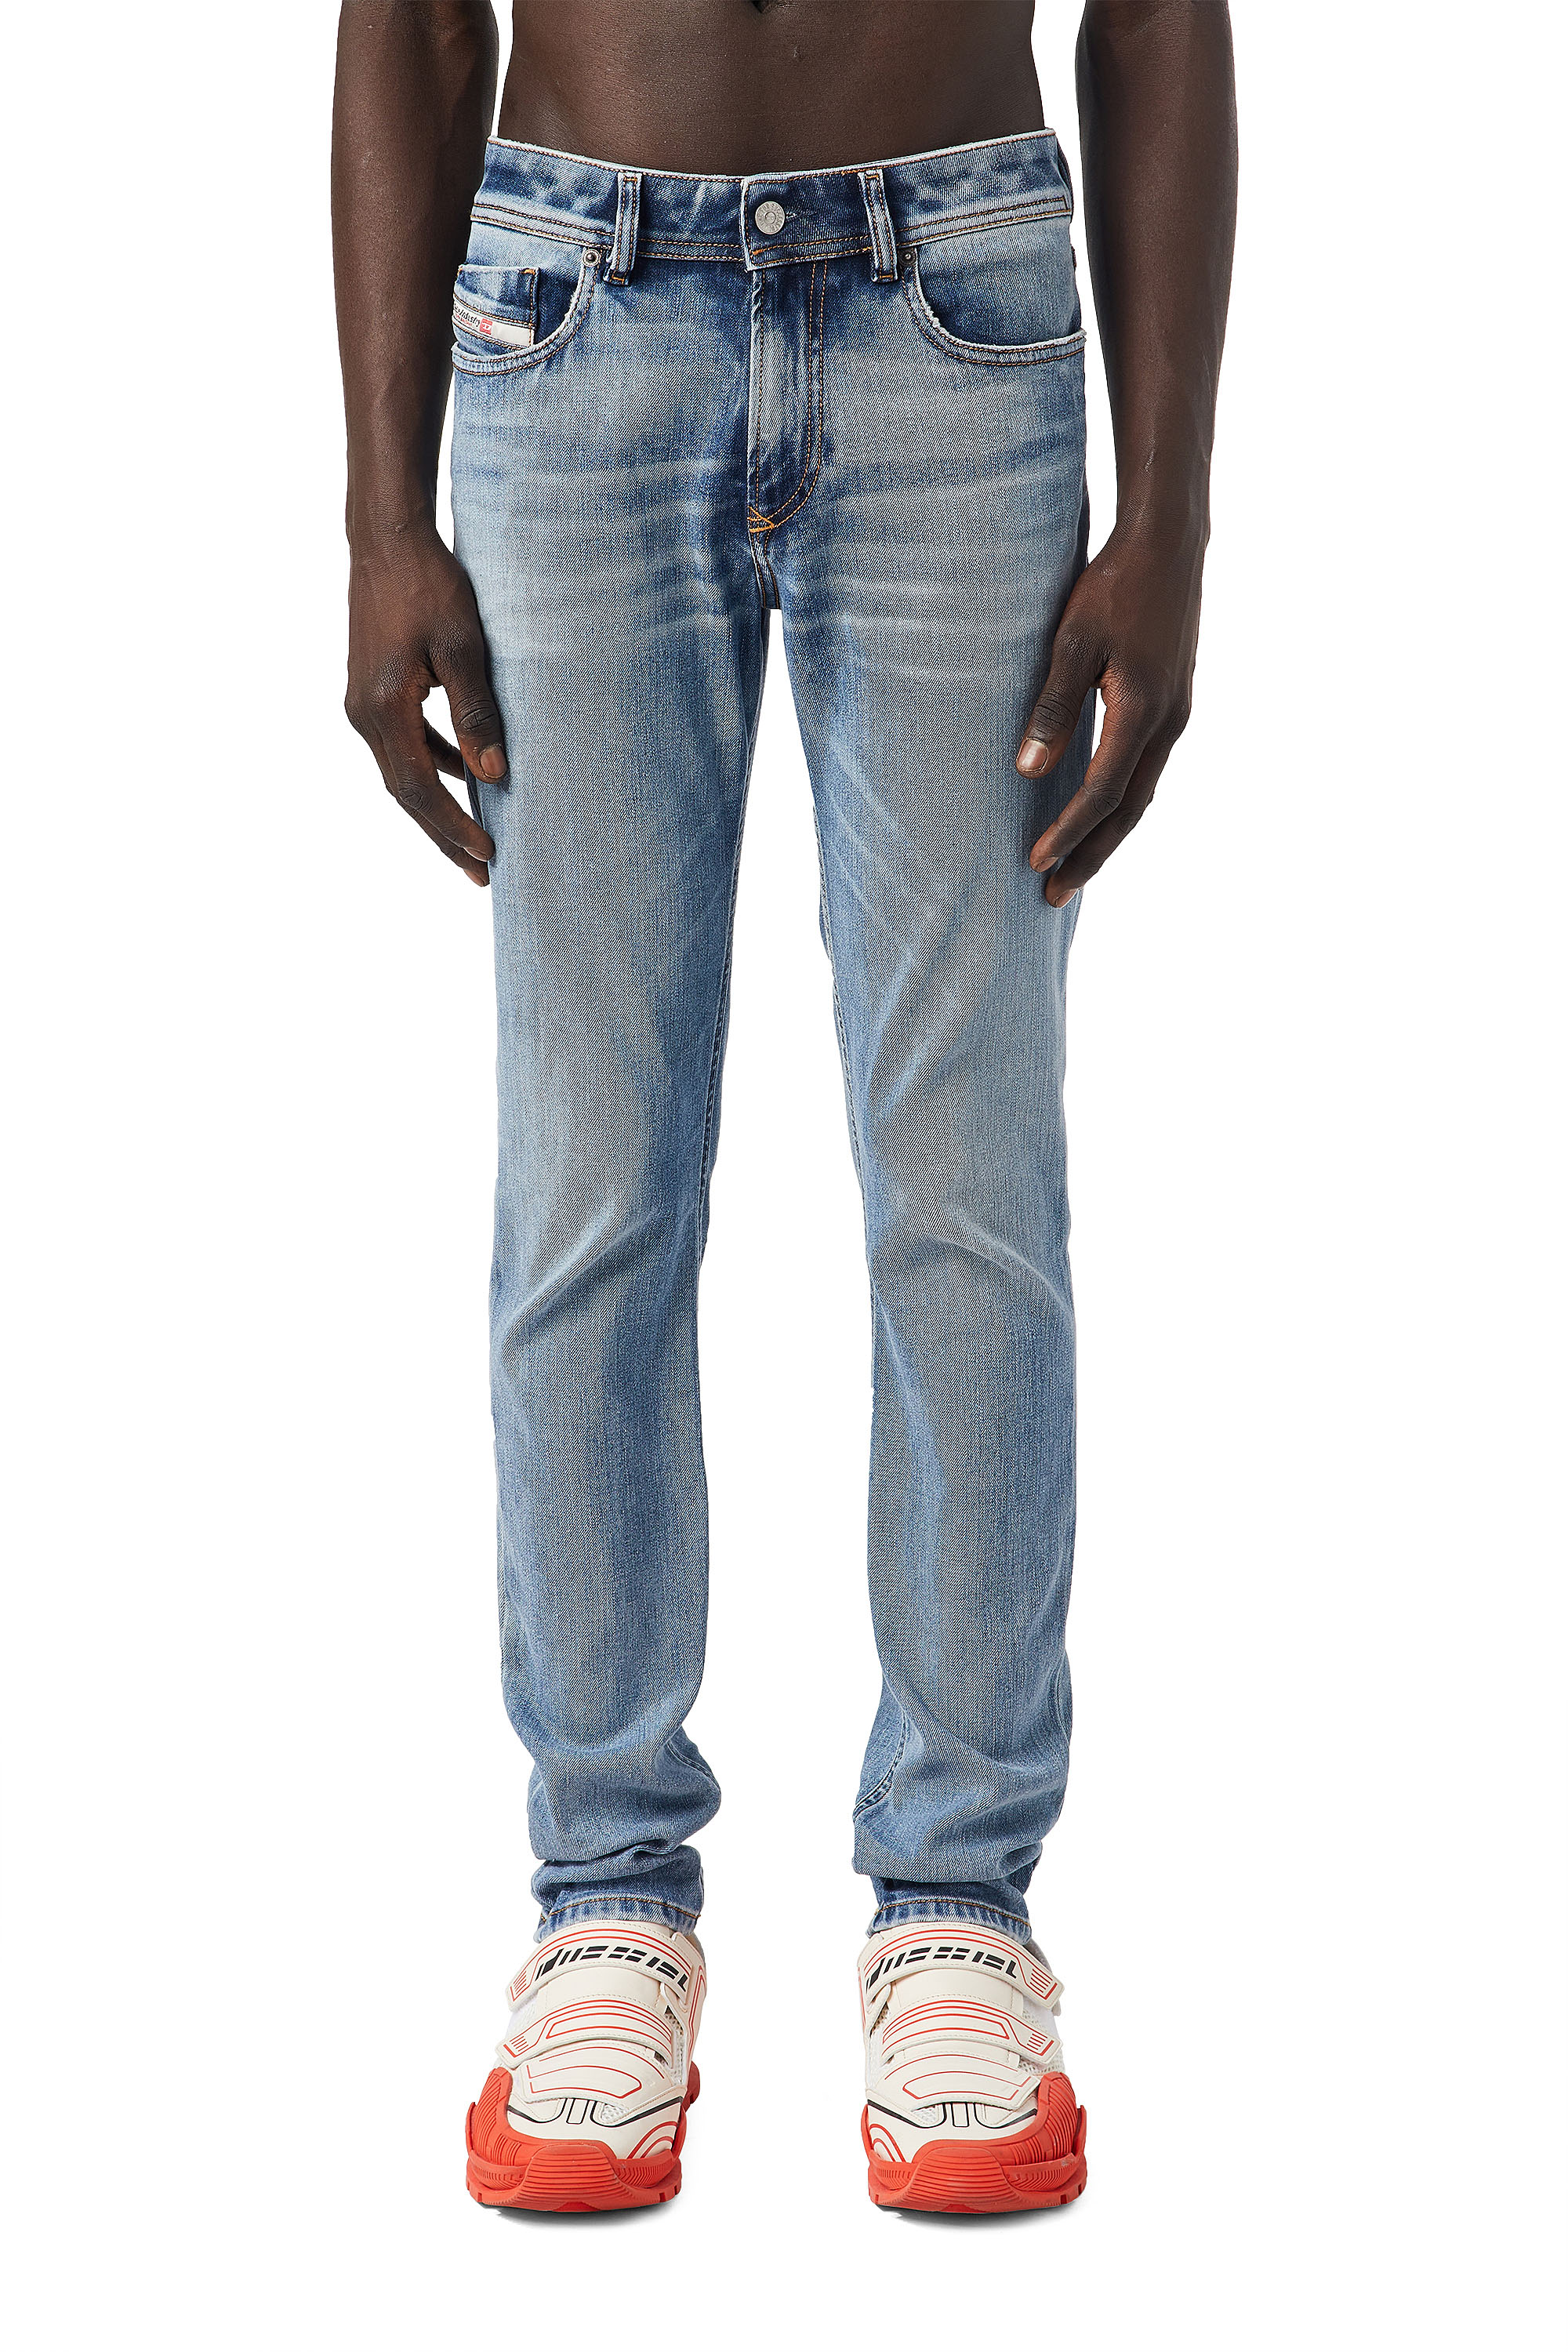 Saddle jeans - Unsere Produkte unter der Vielzahl an verglichenenSaddle jeans!